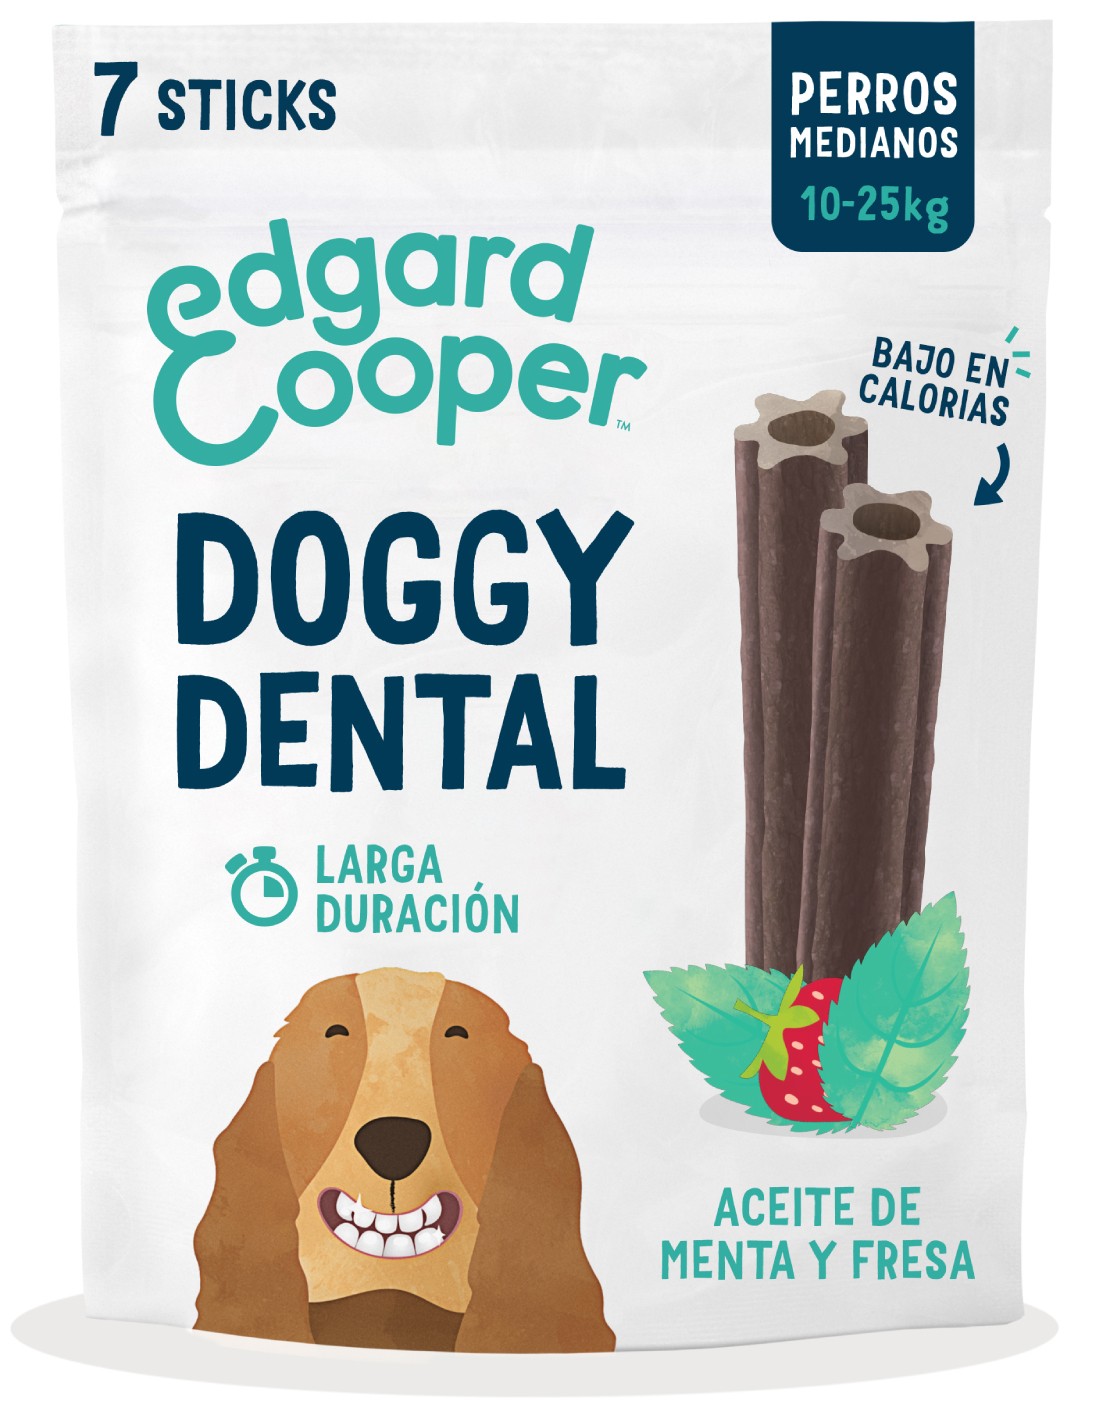 EDGARD & COOPER Fresa y Menta snack dental perro M (175g)